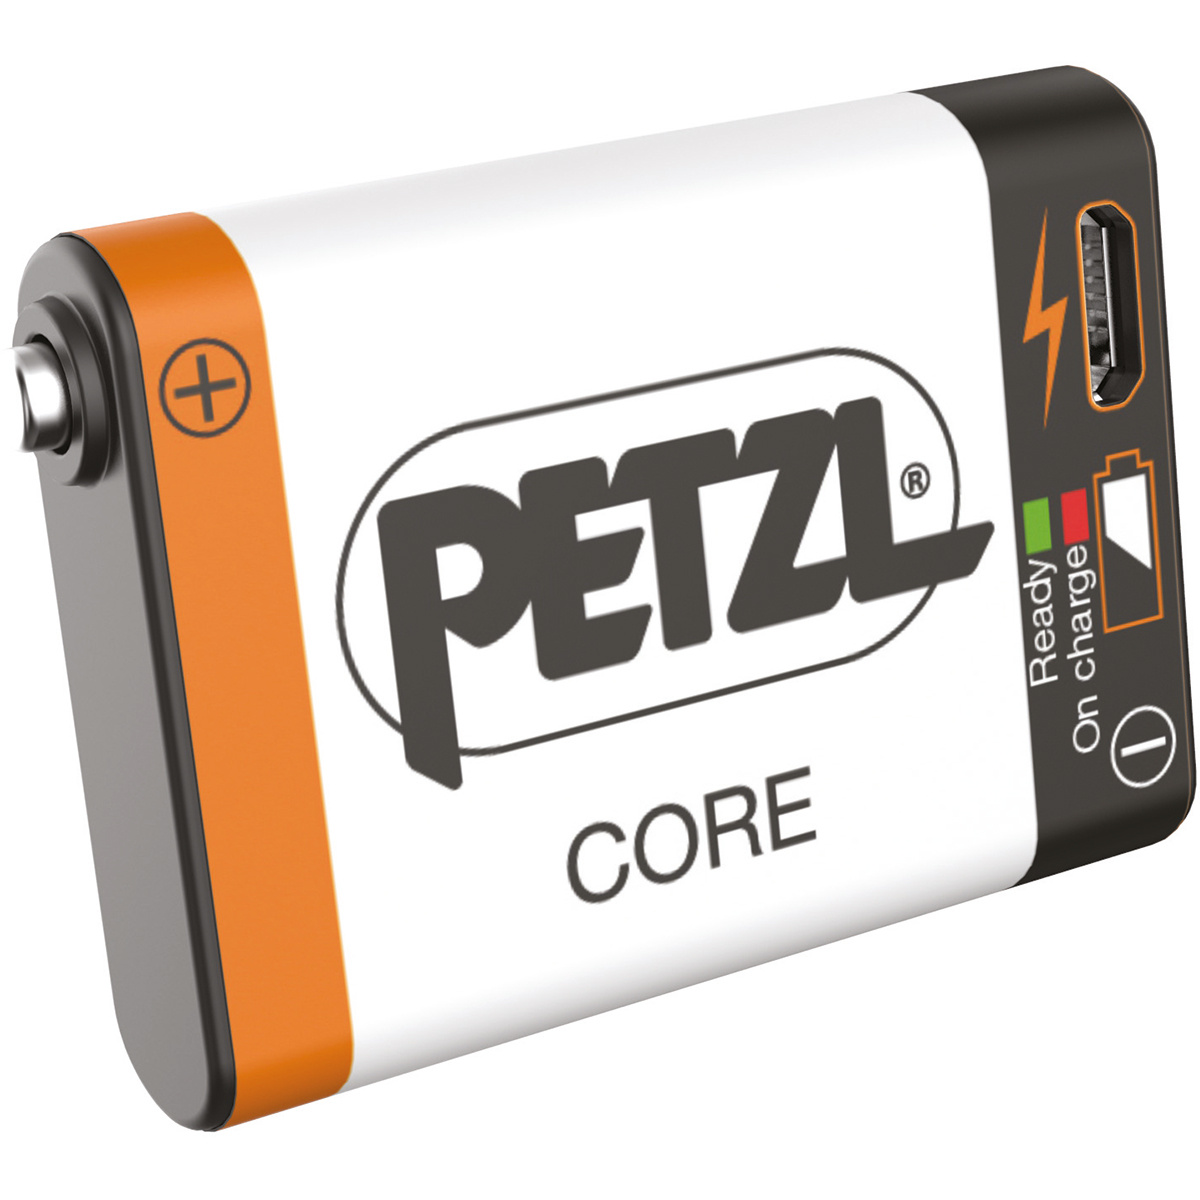 Image of Petzl Batteria ad alte prestazioni Core